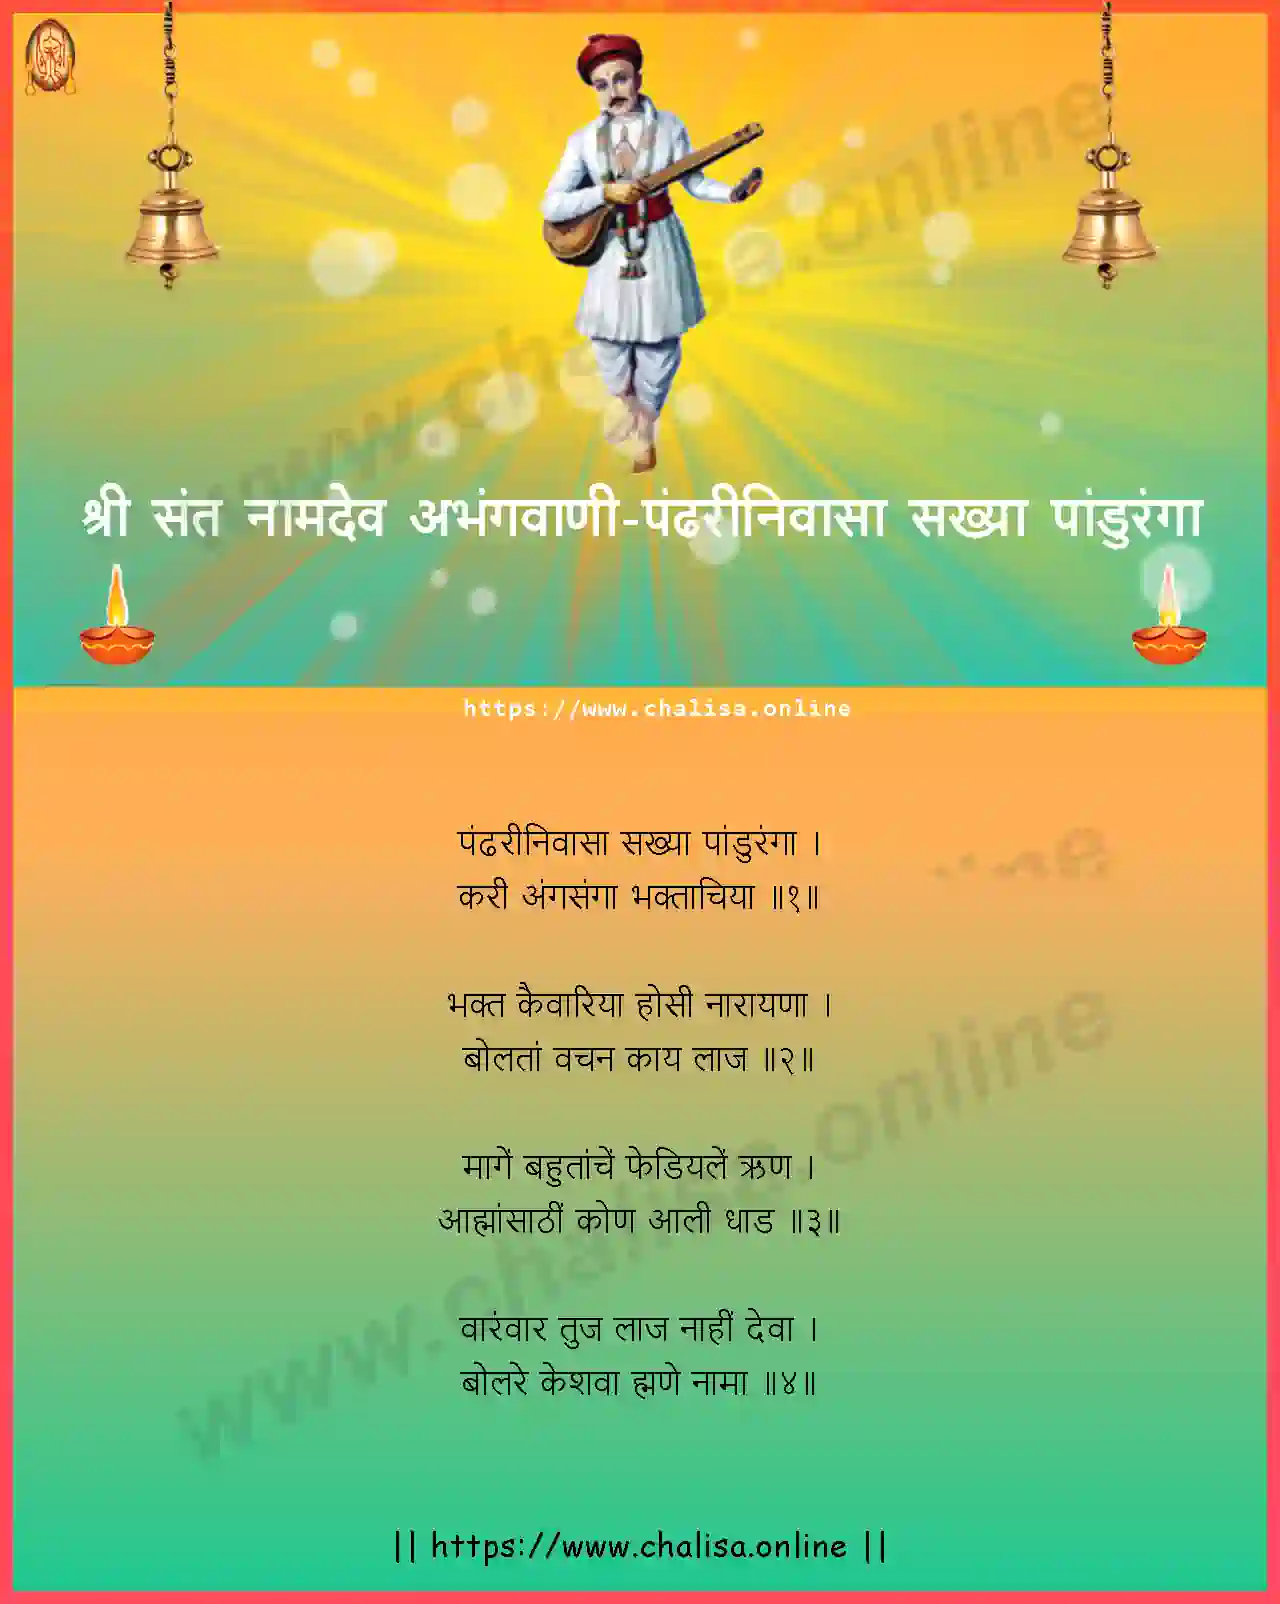 pandhari-nivasa-sakhya-shri-sant-namadev-abhang-marathi-lyrics-download